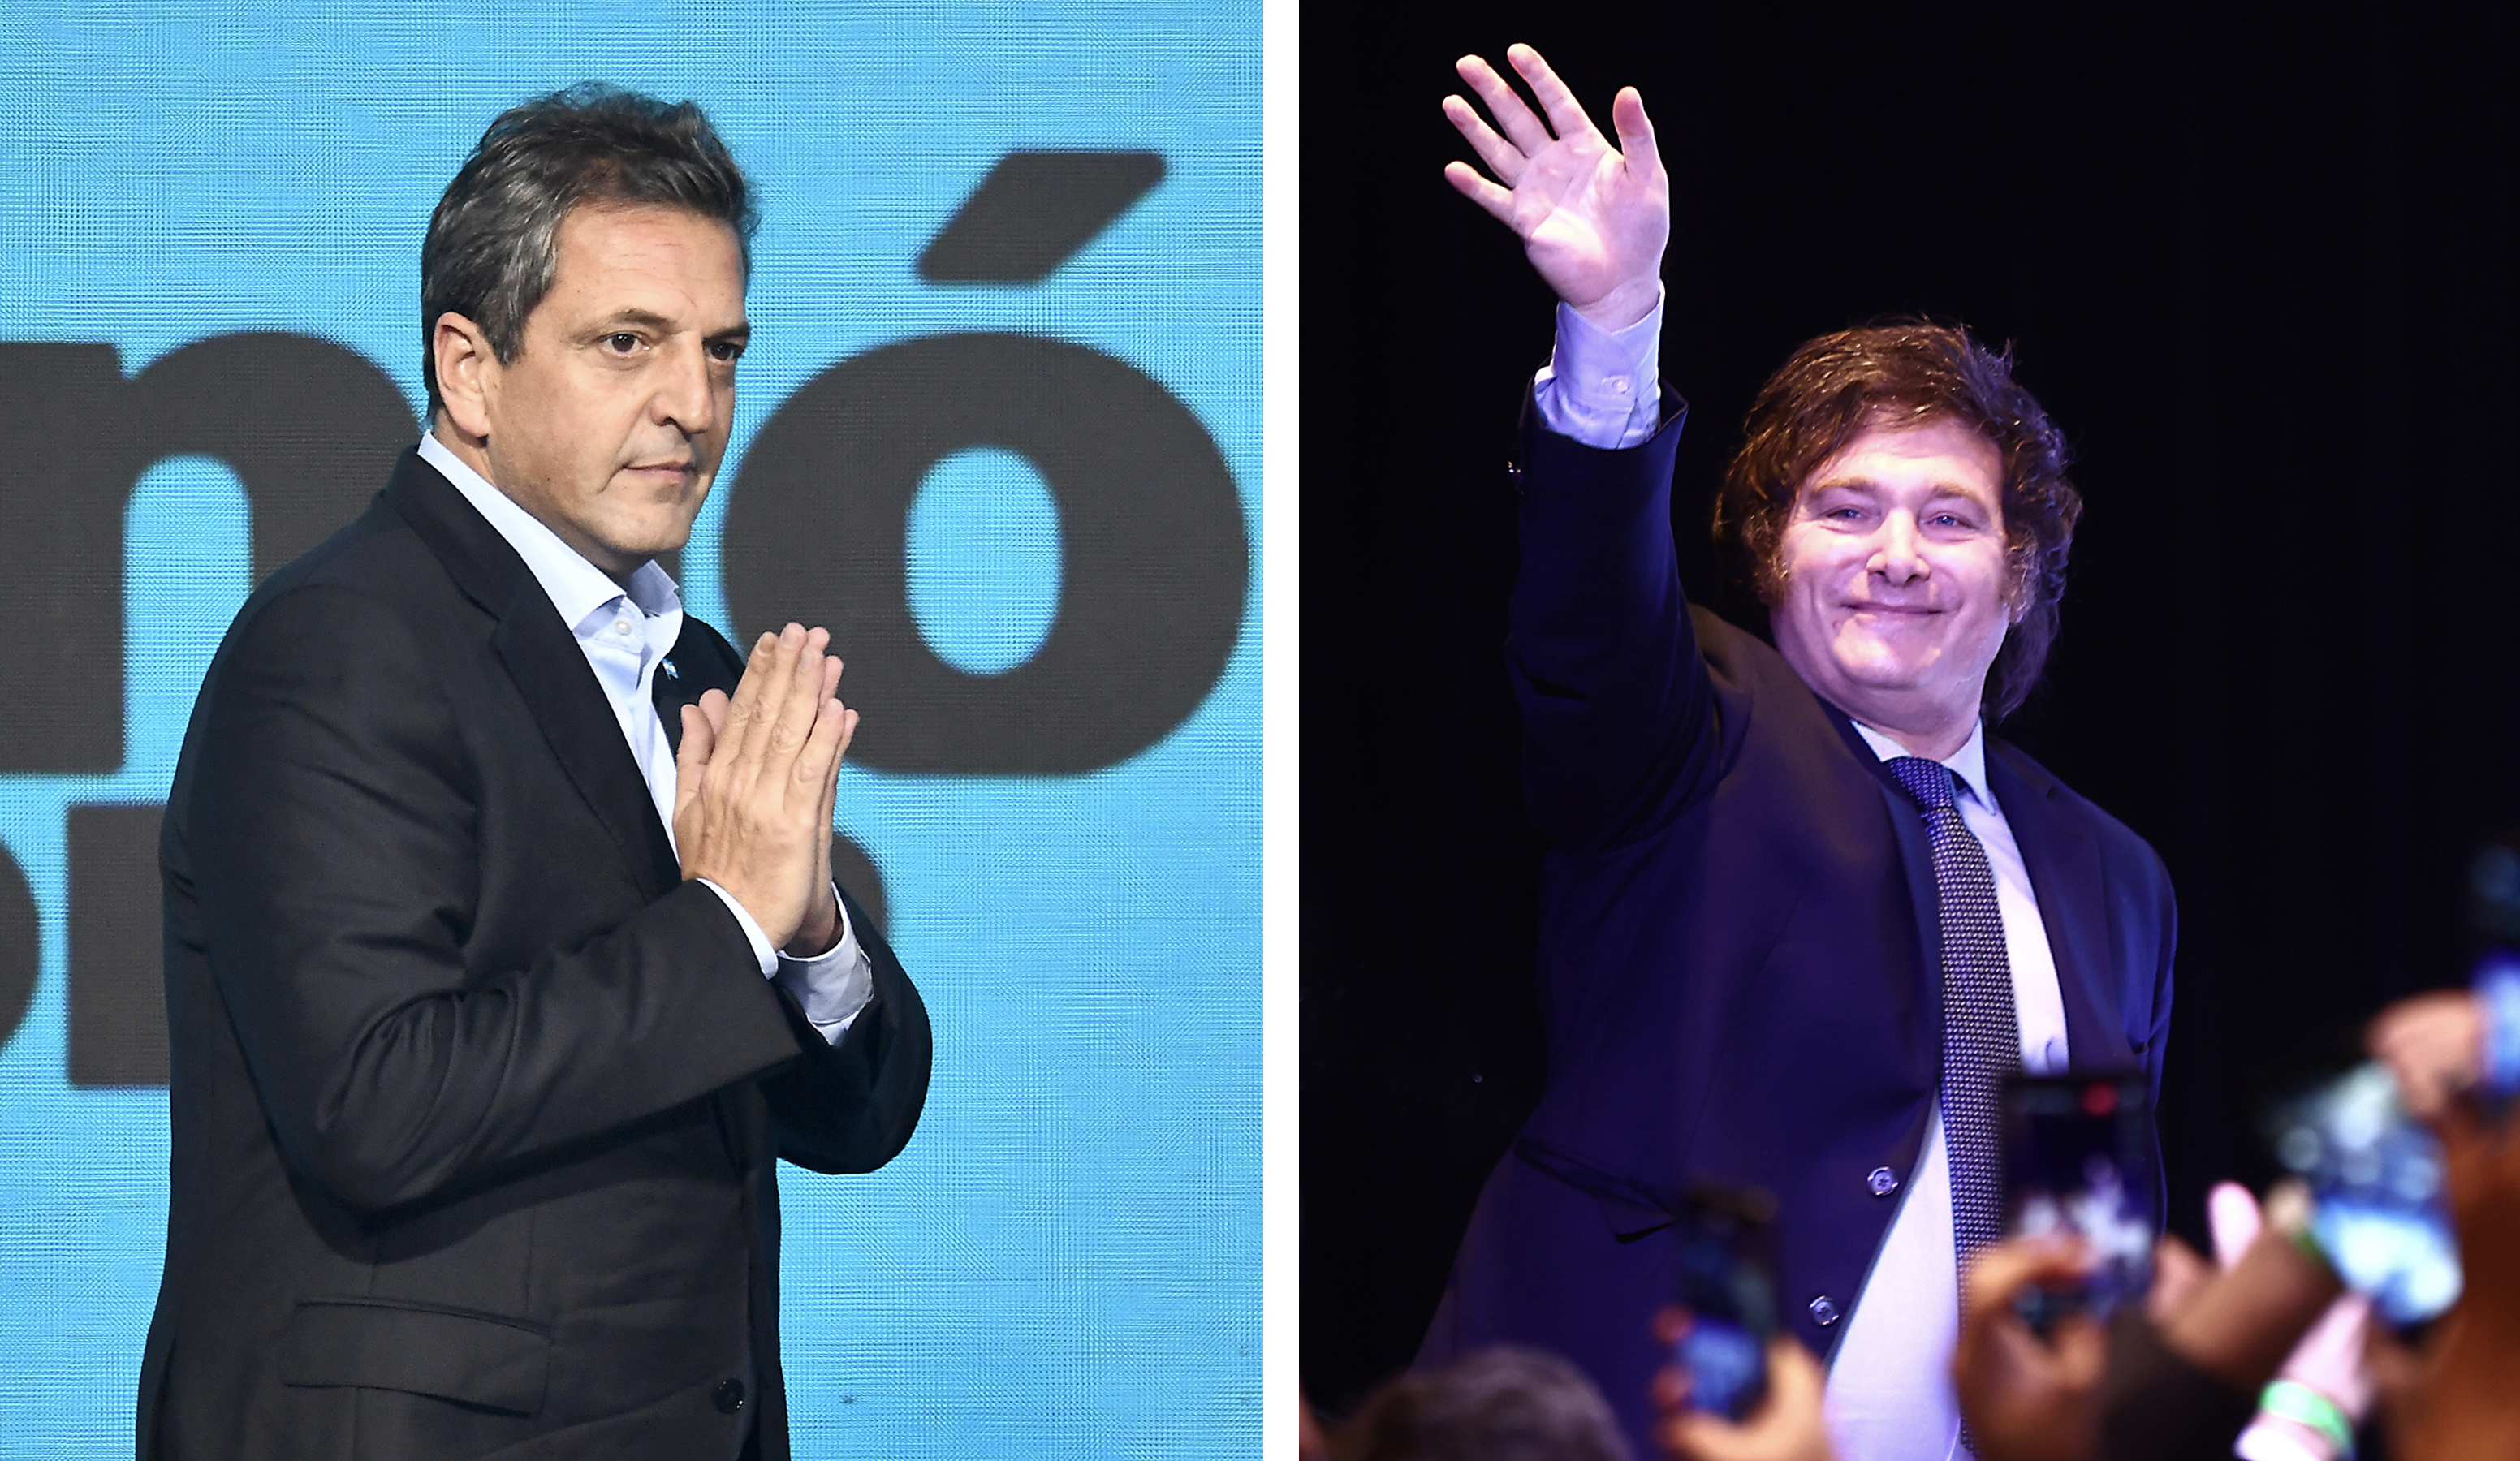 Elecciones en Argentina en vivo: votaciones, participación y resultados de la segunda vuelta de las presidenciales | Alberto Fernández: “Debemos cuidar y respetar mucho la democracia”